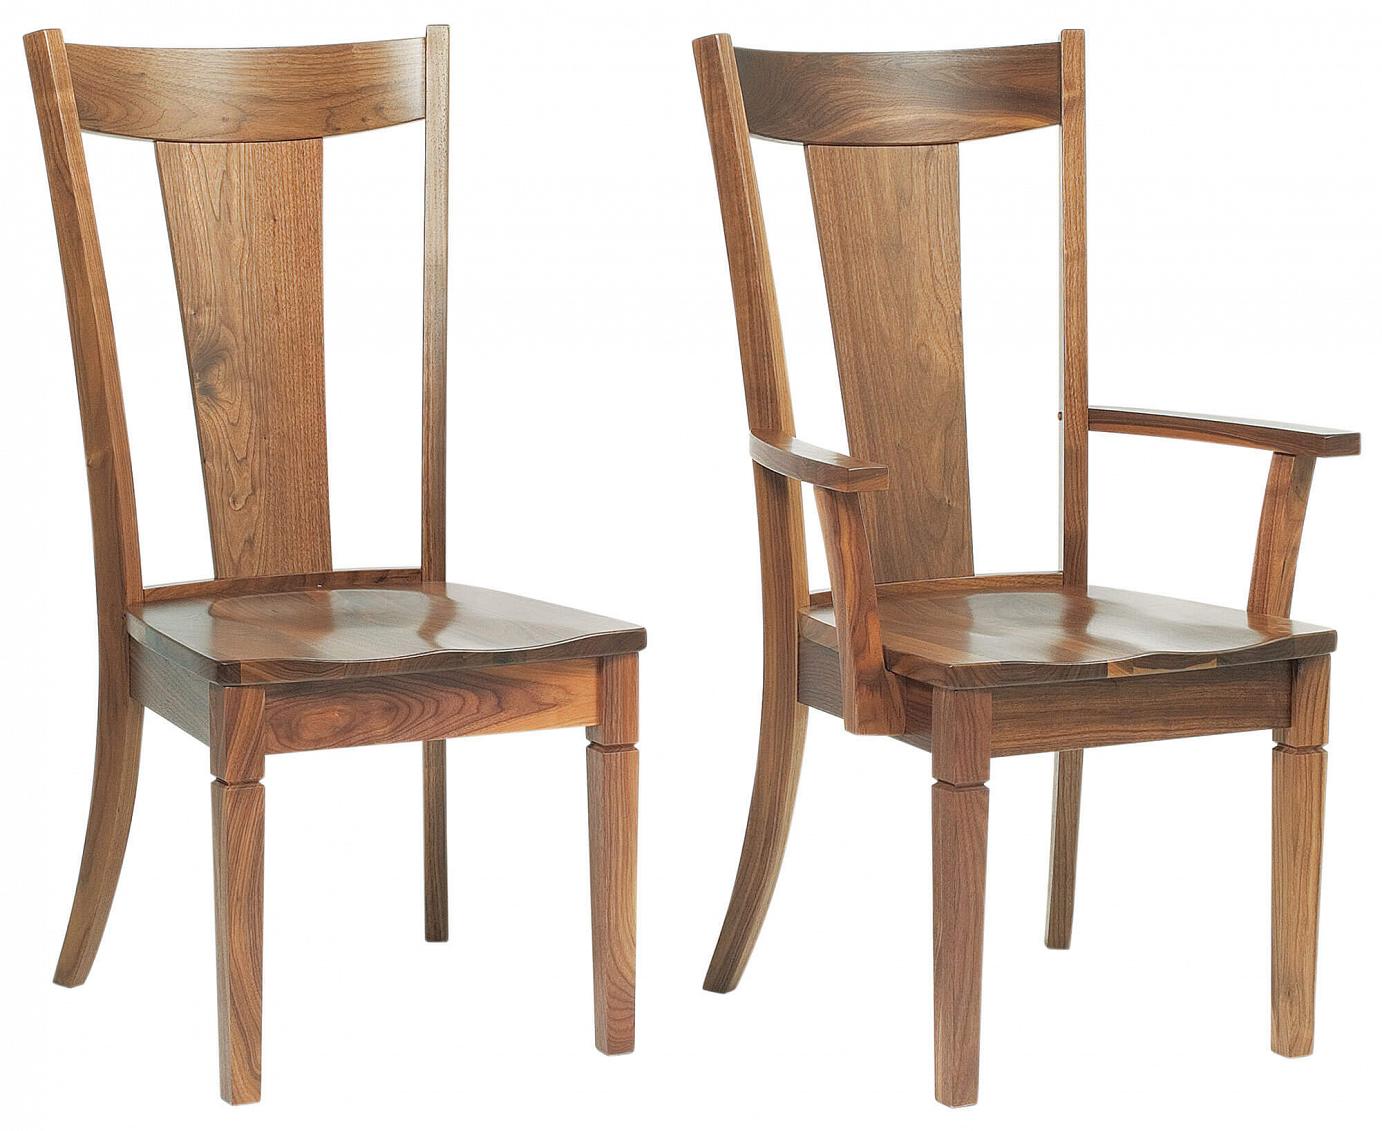 RH Yoder Parkland Chairs